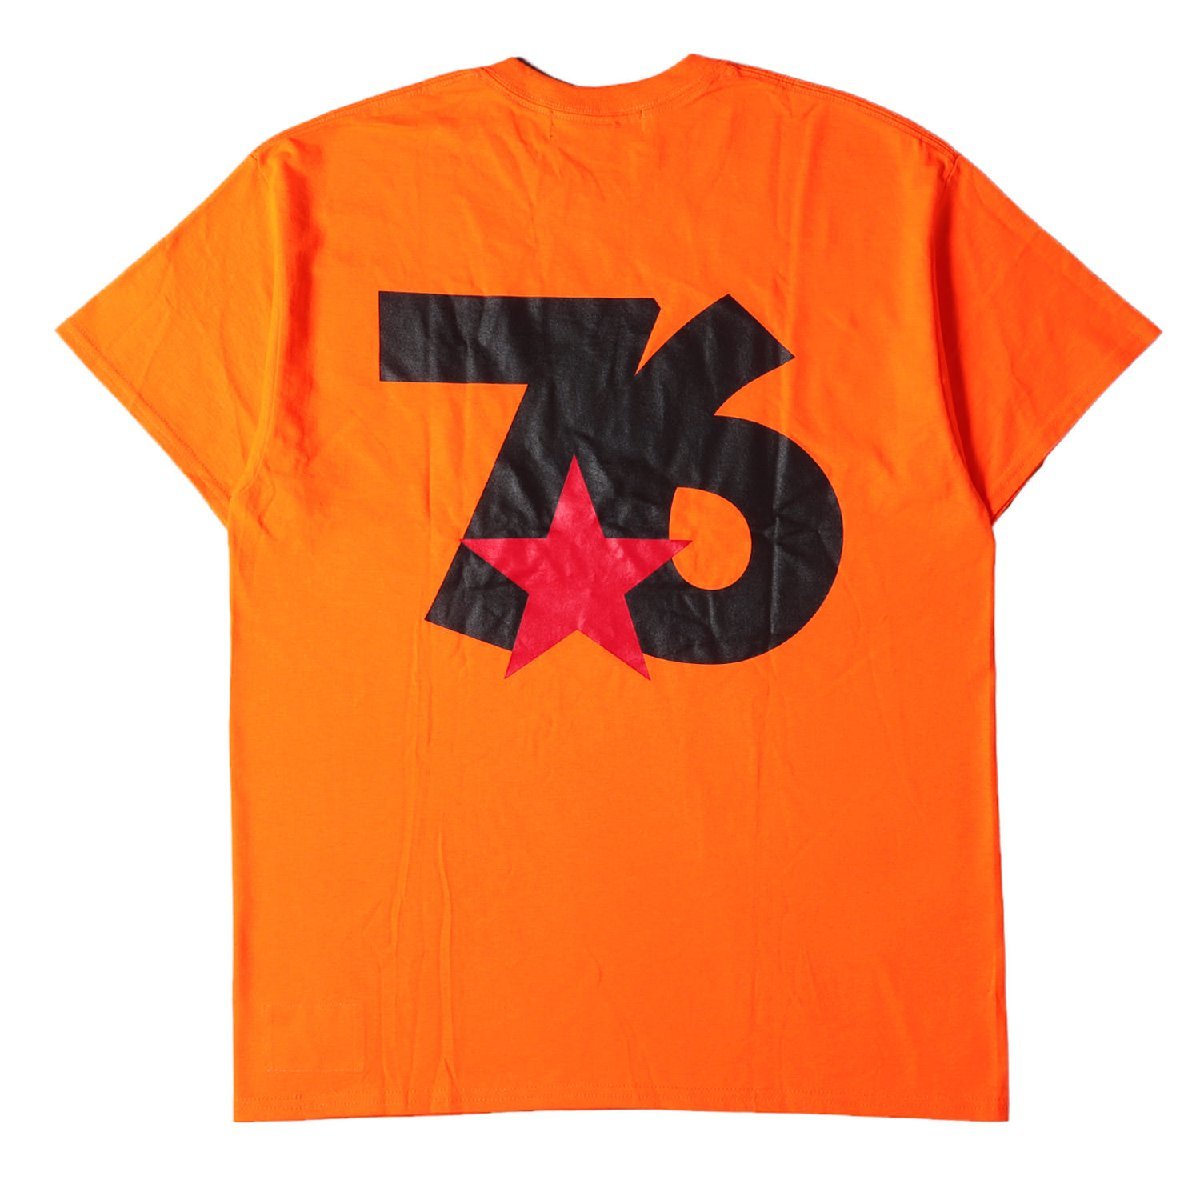 男の子向けプレゼント集結 バック サイズ:記載なし(XL位) Tシャツ リミテッド ウィズ WHIZLIMITED 76ロゴ カットソー トップス オレンジ Tシャツ 半袖 クルーネック 文字、ロゴ